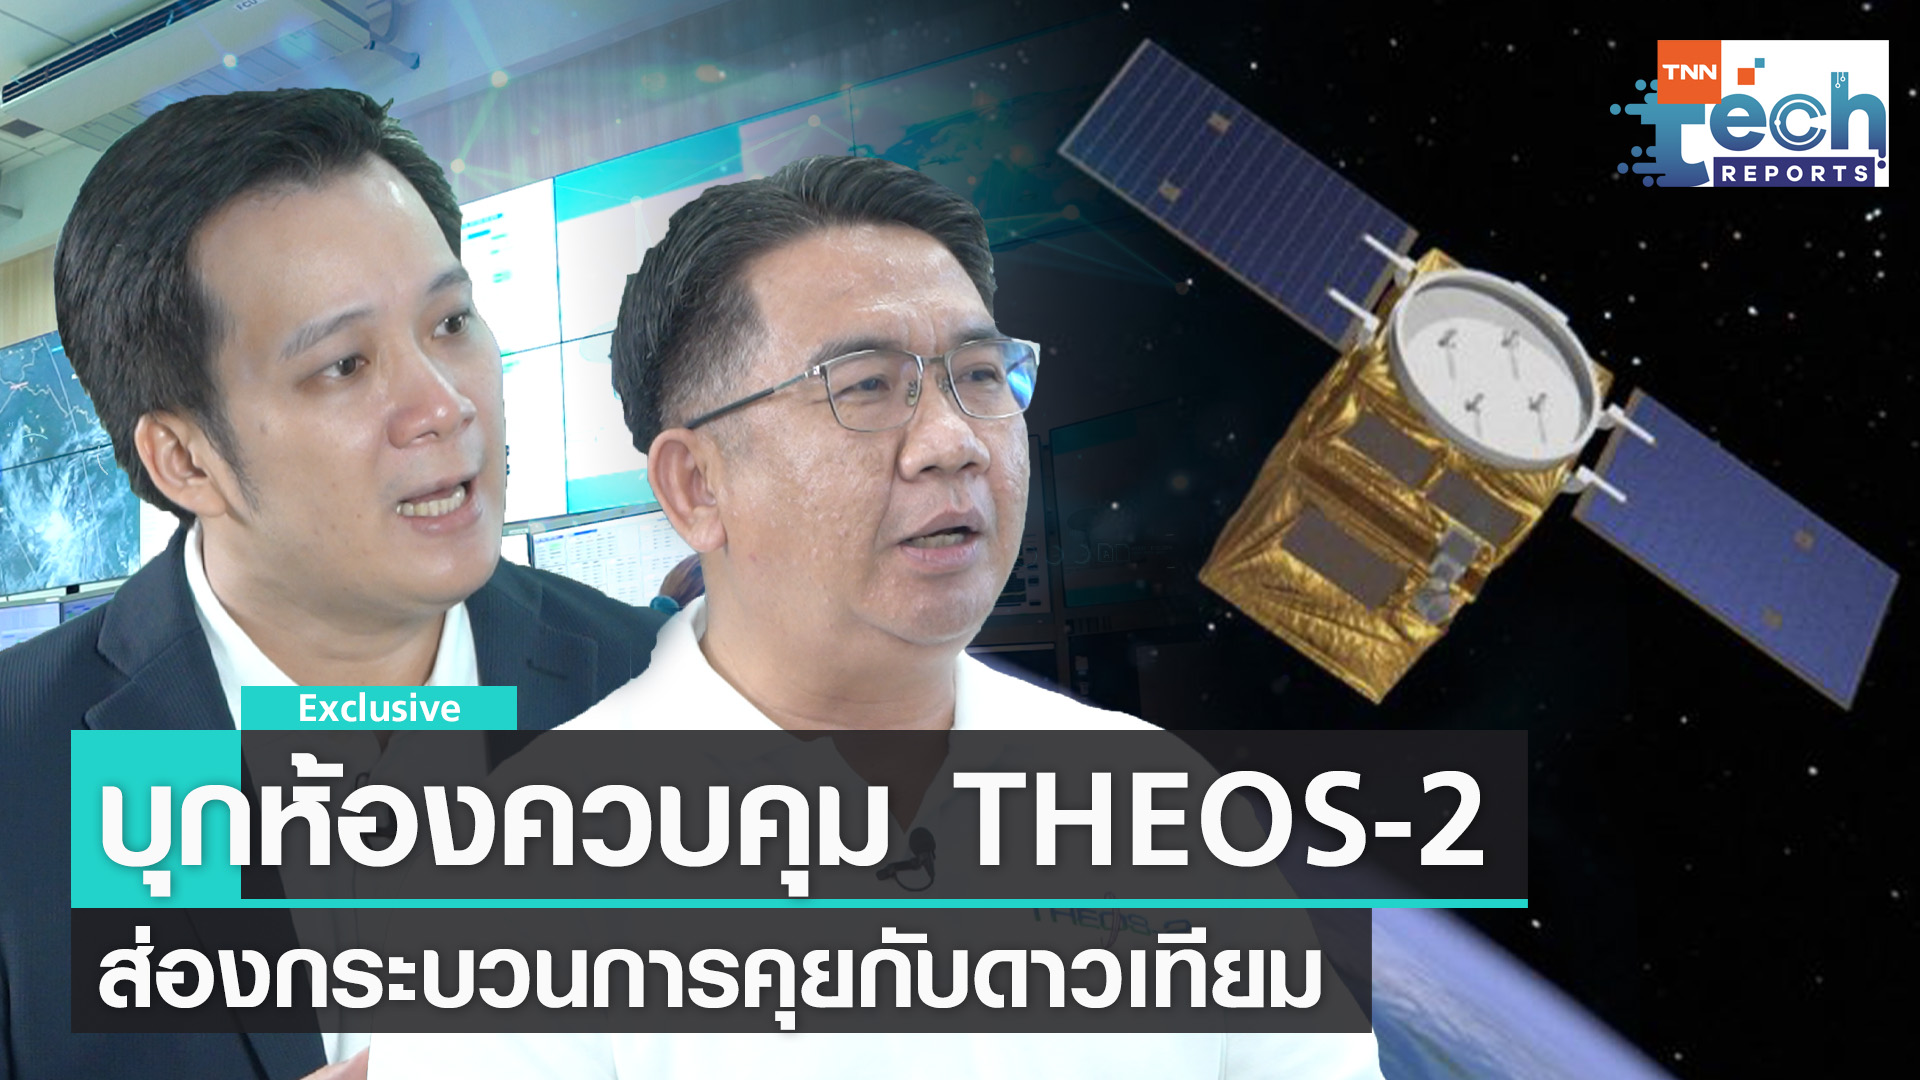 บุกห้องควบคุม “THEOS-2” ส่องกระบวนการสื่อสารกับดาวเทียม | TNN Tech Reports